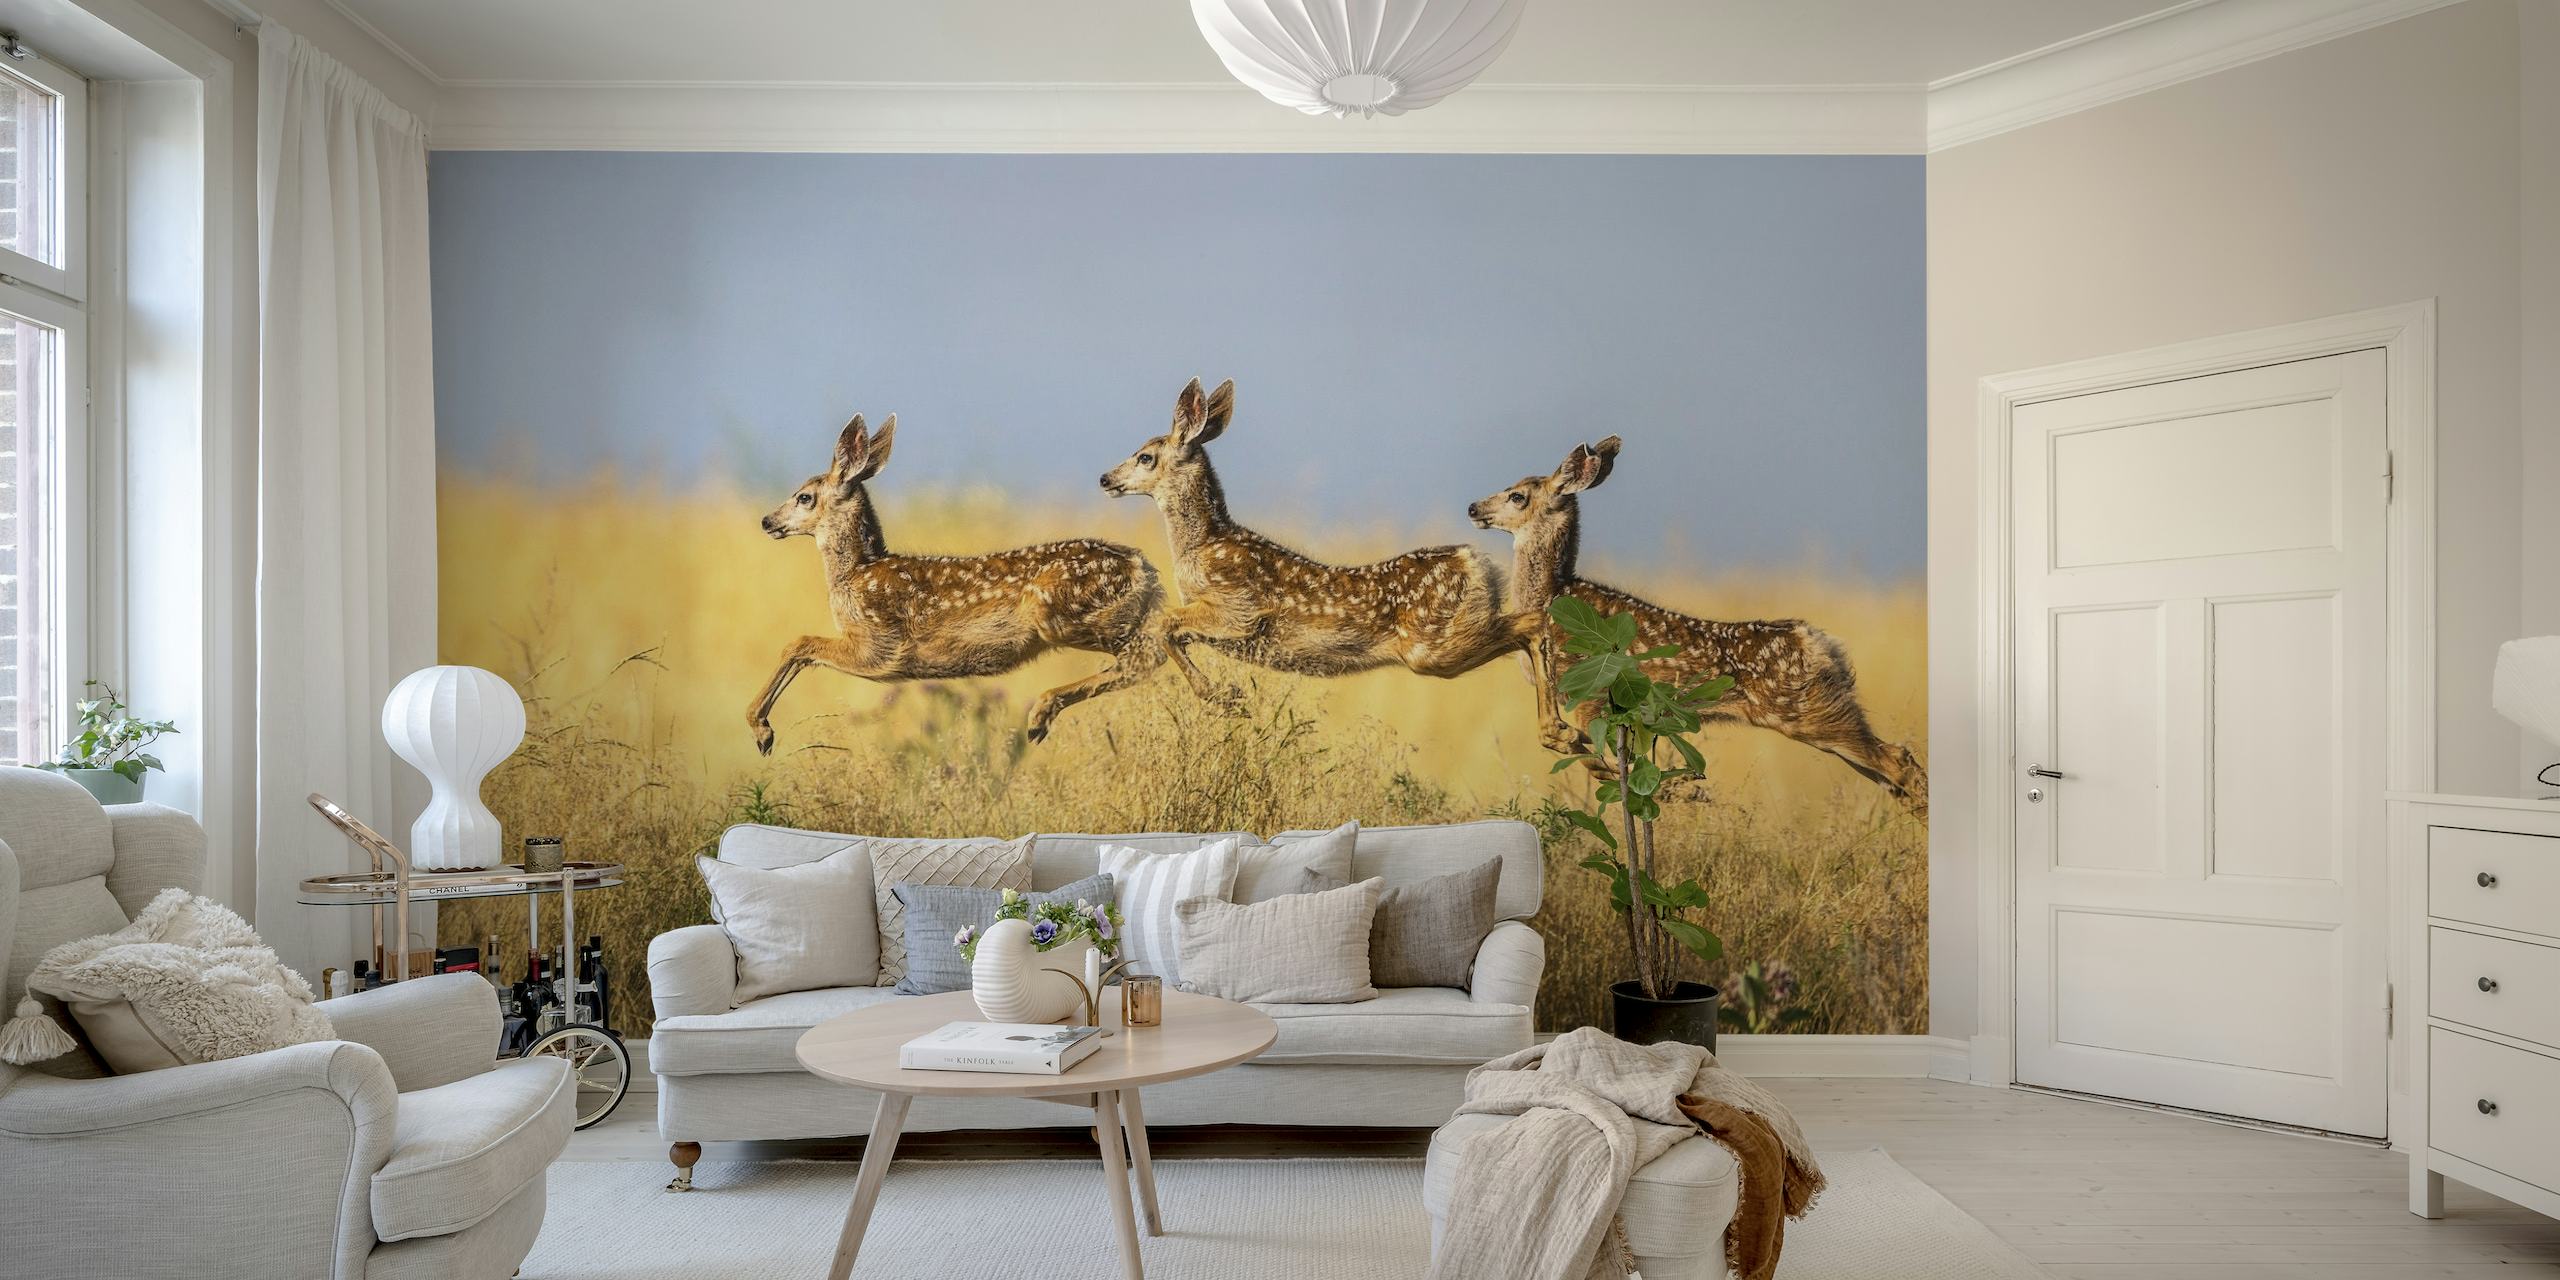 Tri životinje skaču preko savane na zidnoj slici 'Trostruki skok'